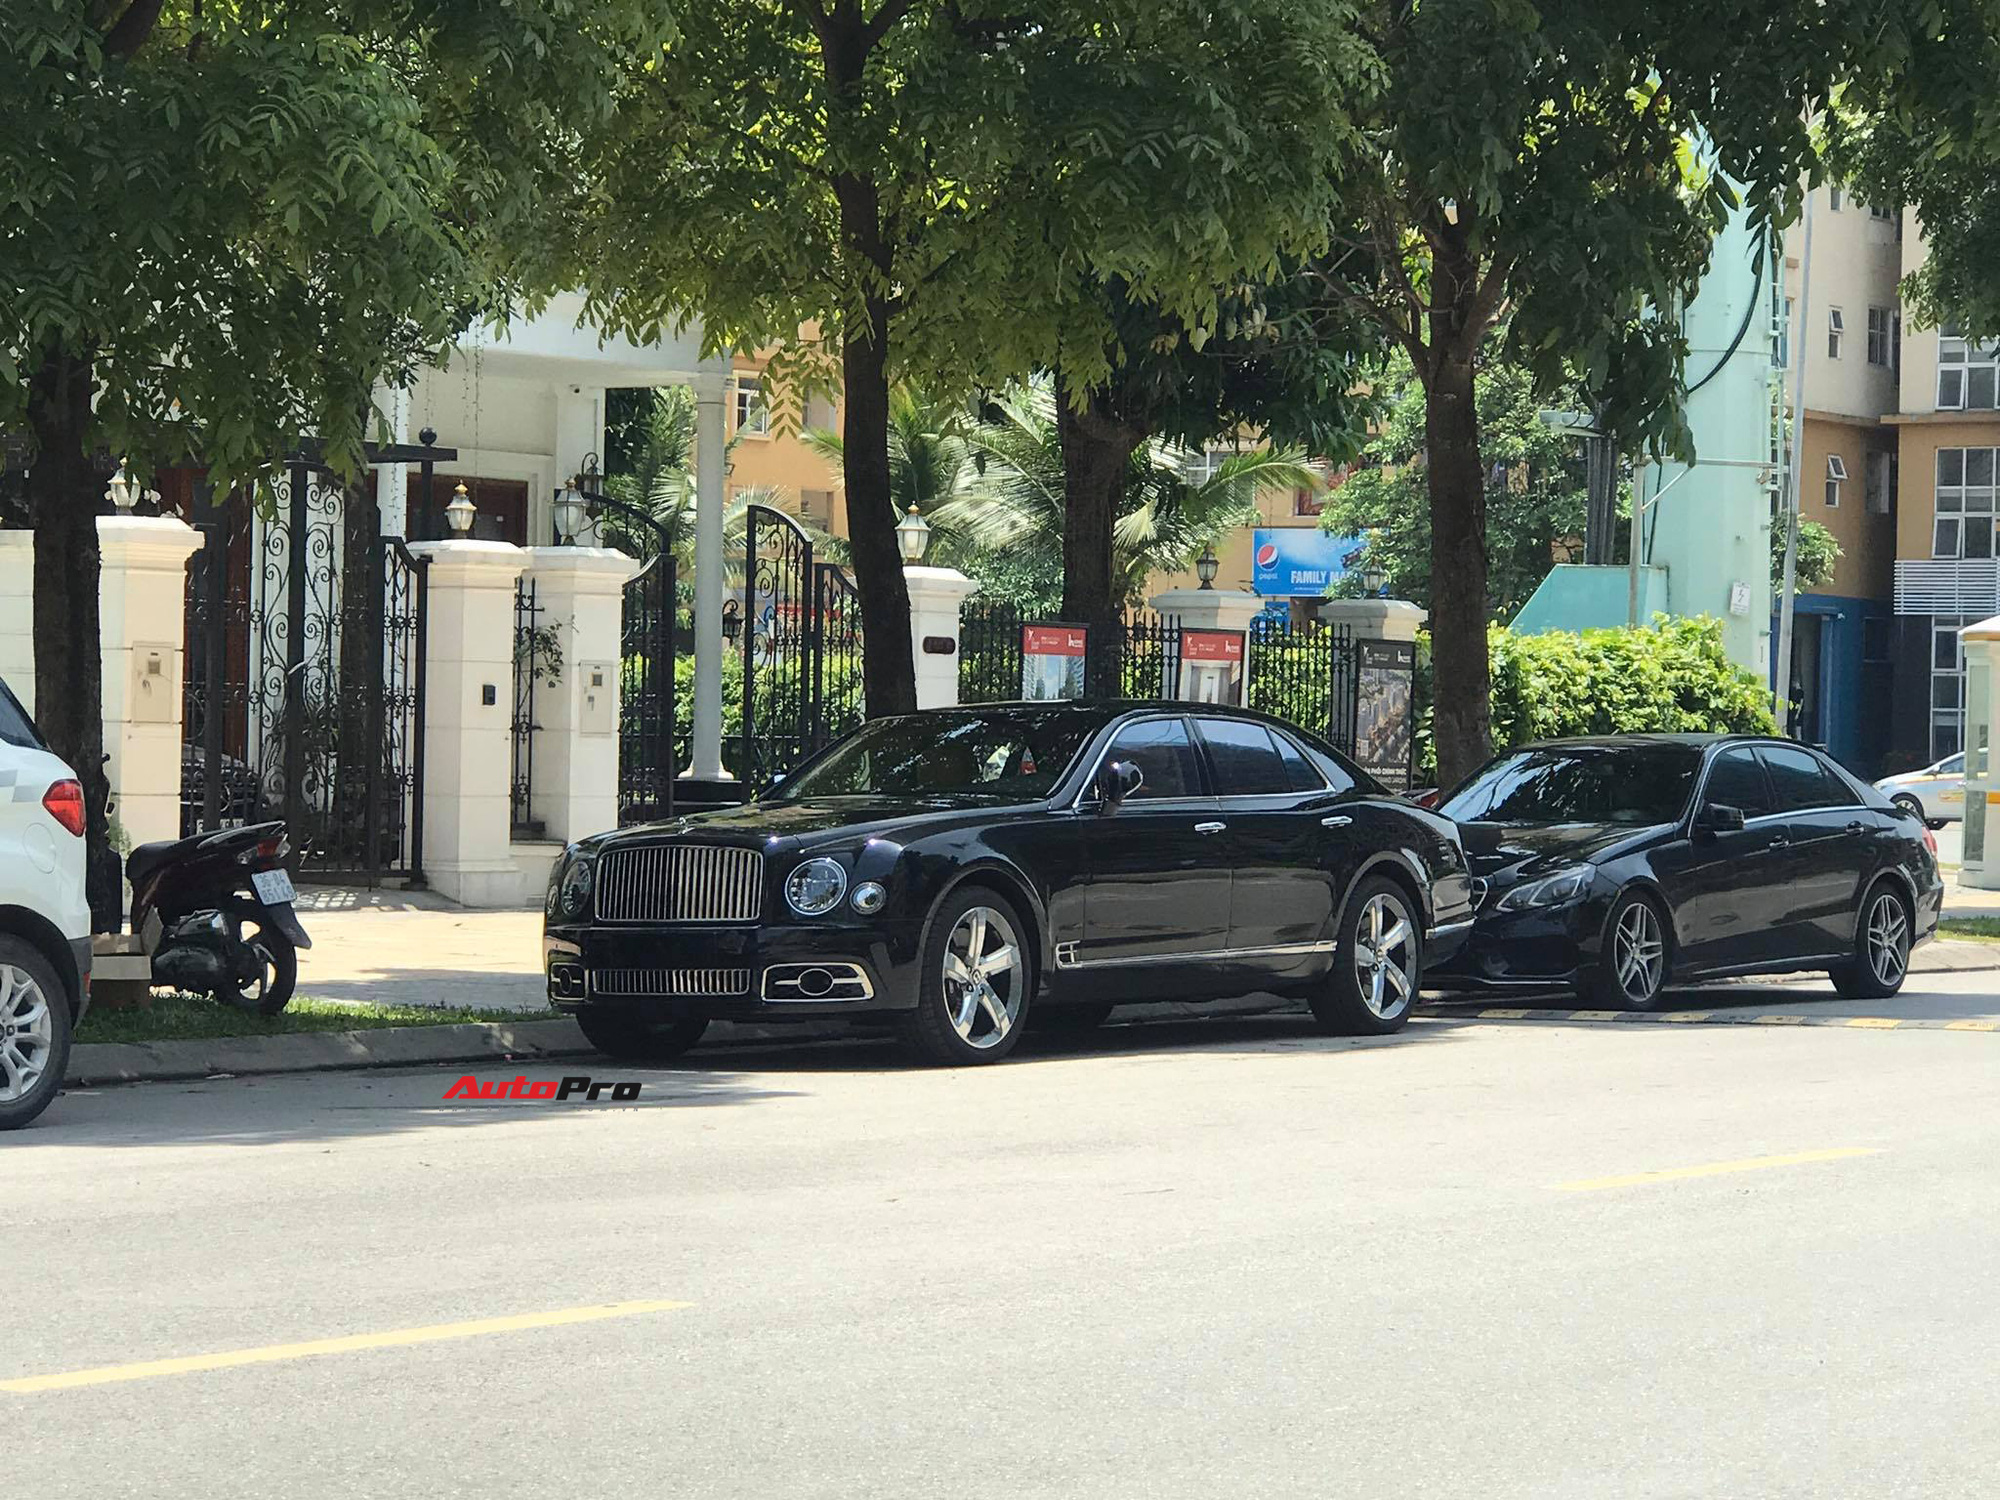 Bắt gặp Bentley Mulsanne Speed đời mới cực hiếm tại Việt Nam, giá bán là chi tiết khiến nhiều người tò mò - Ảnh 2.